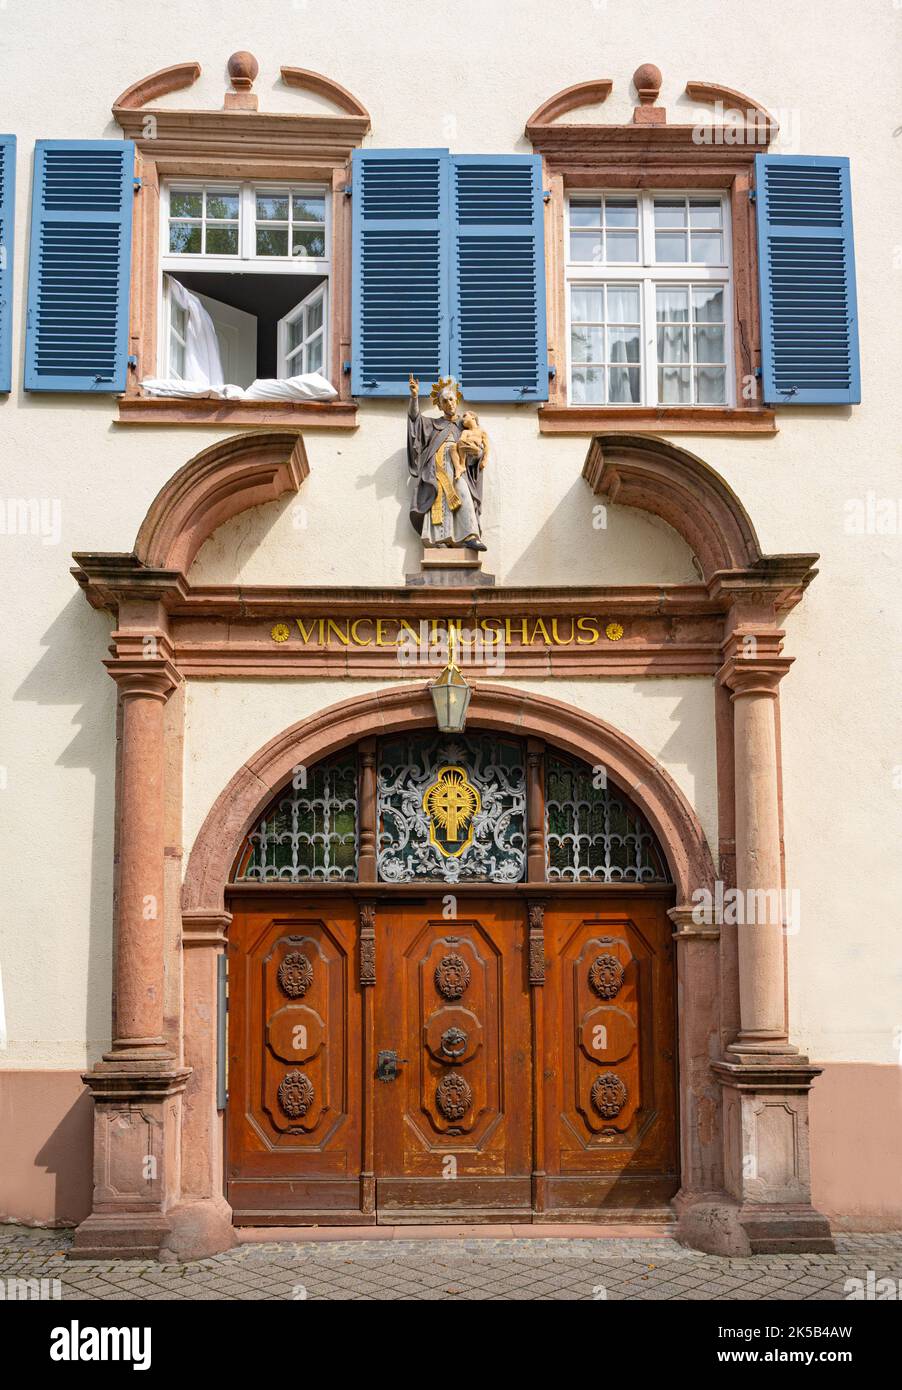 Portail d'entrée de la Vincentiushaus à Offenburg. Baden Wuerttemberg, Allemagne, Europe Banque D'Images